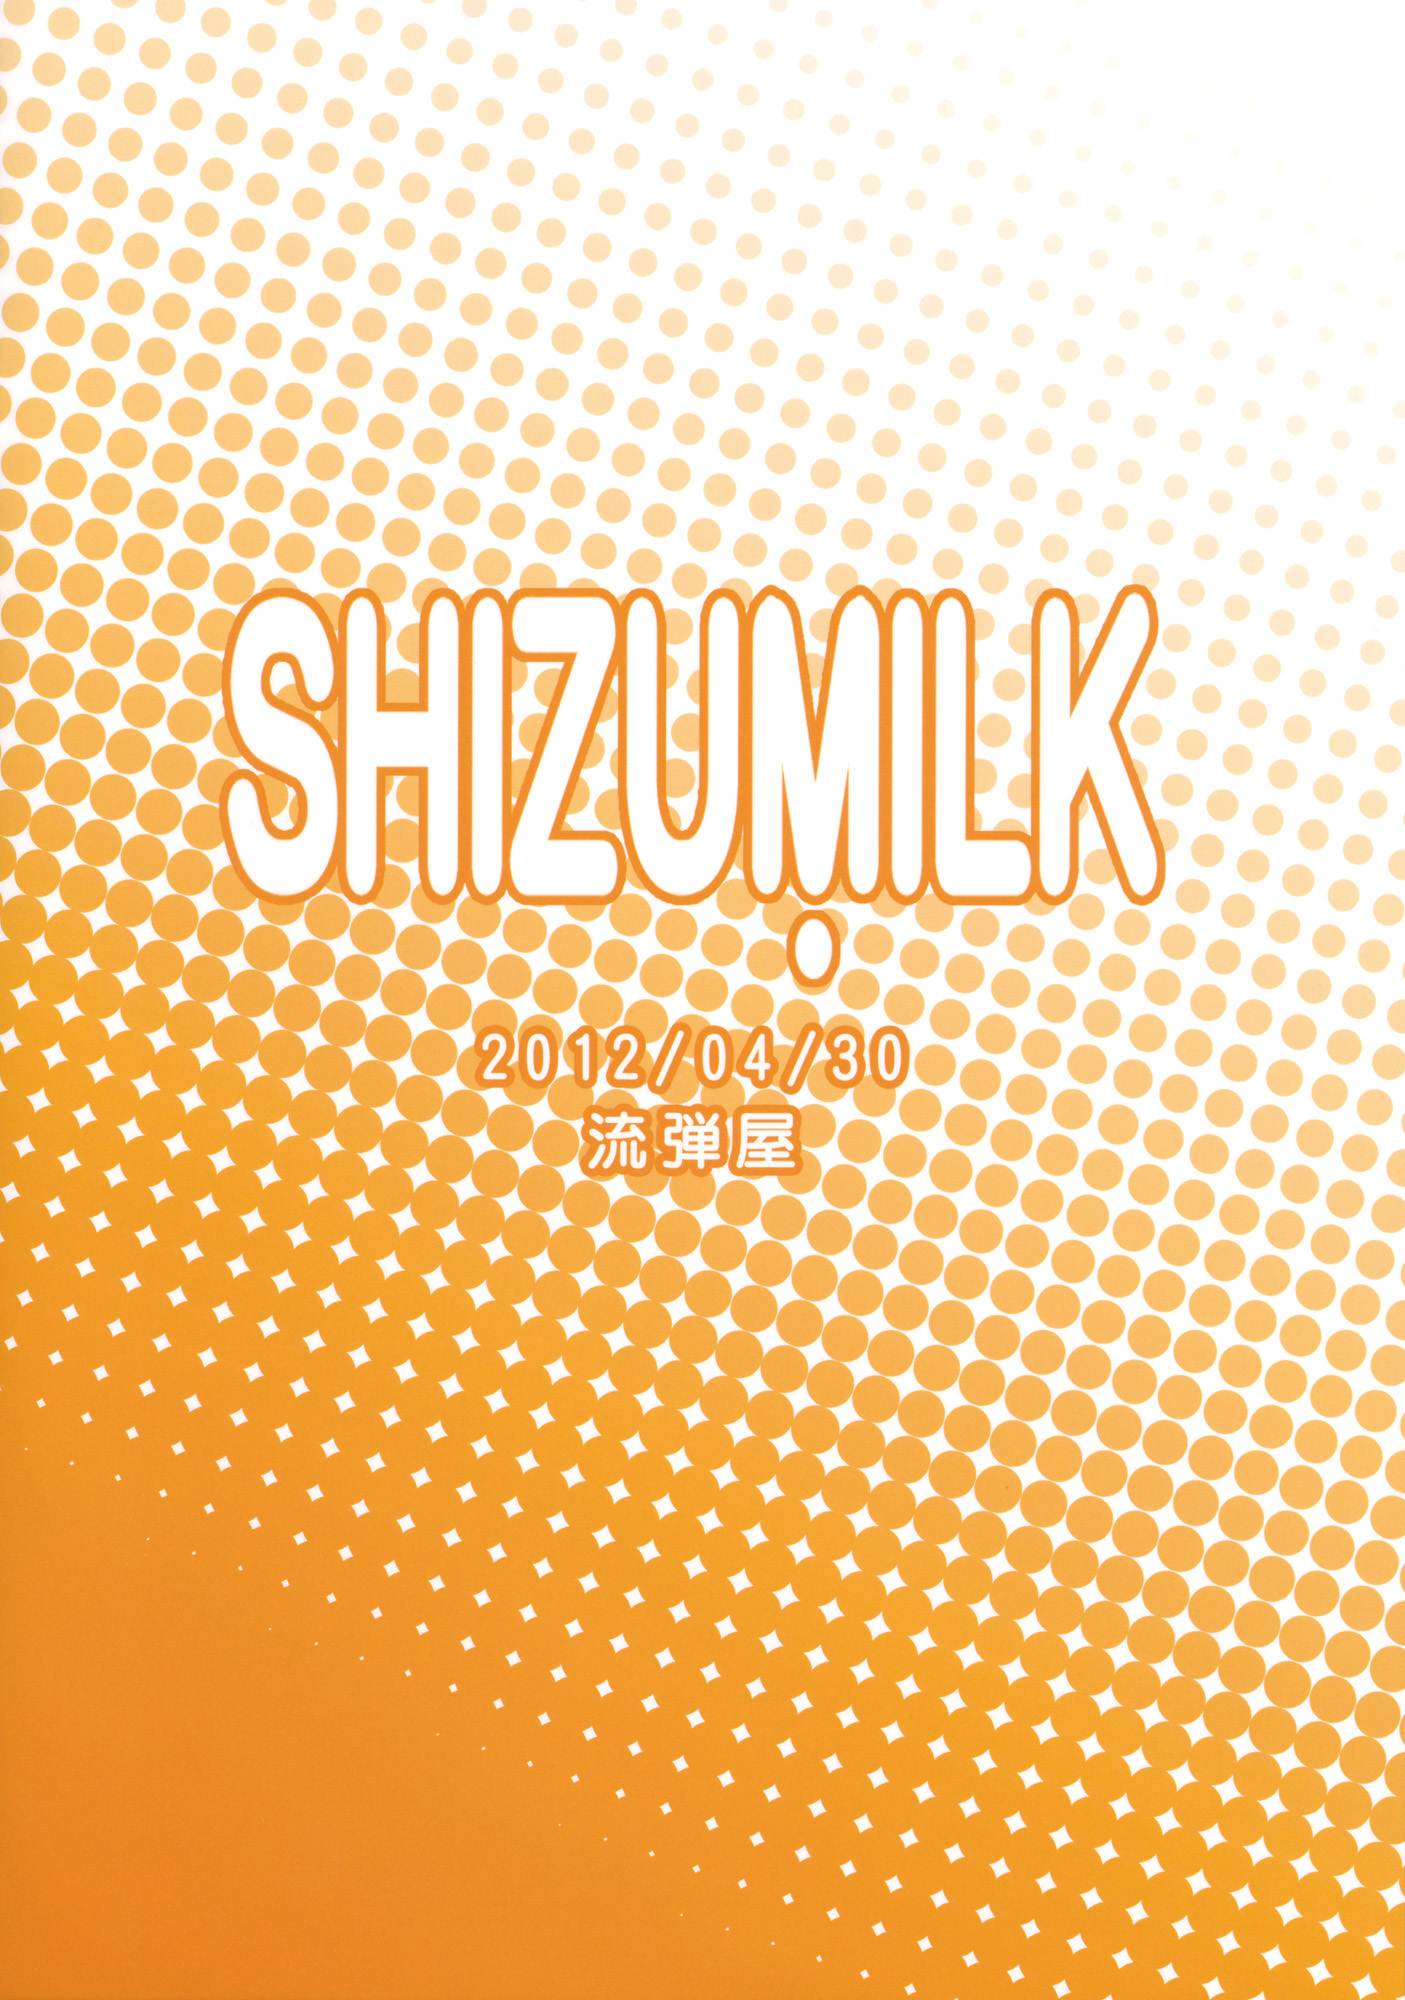 Shizumilk (Idolmaster)